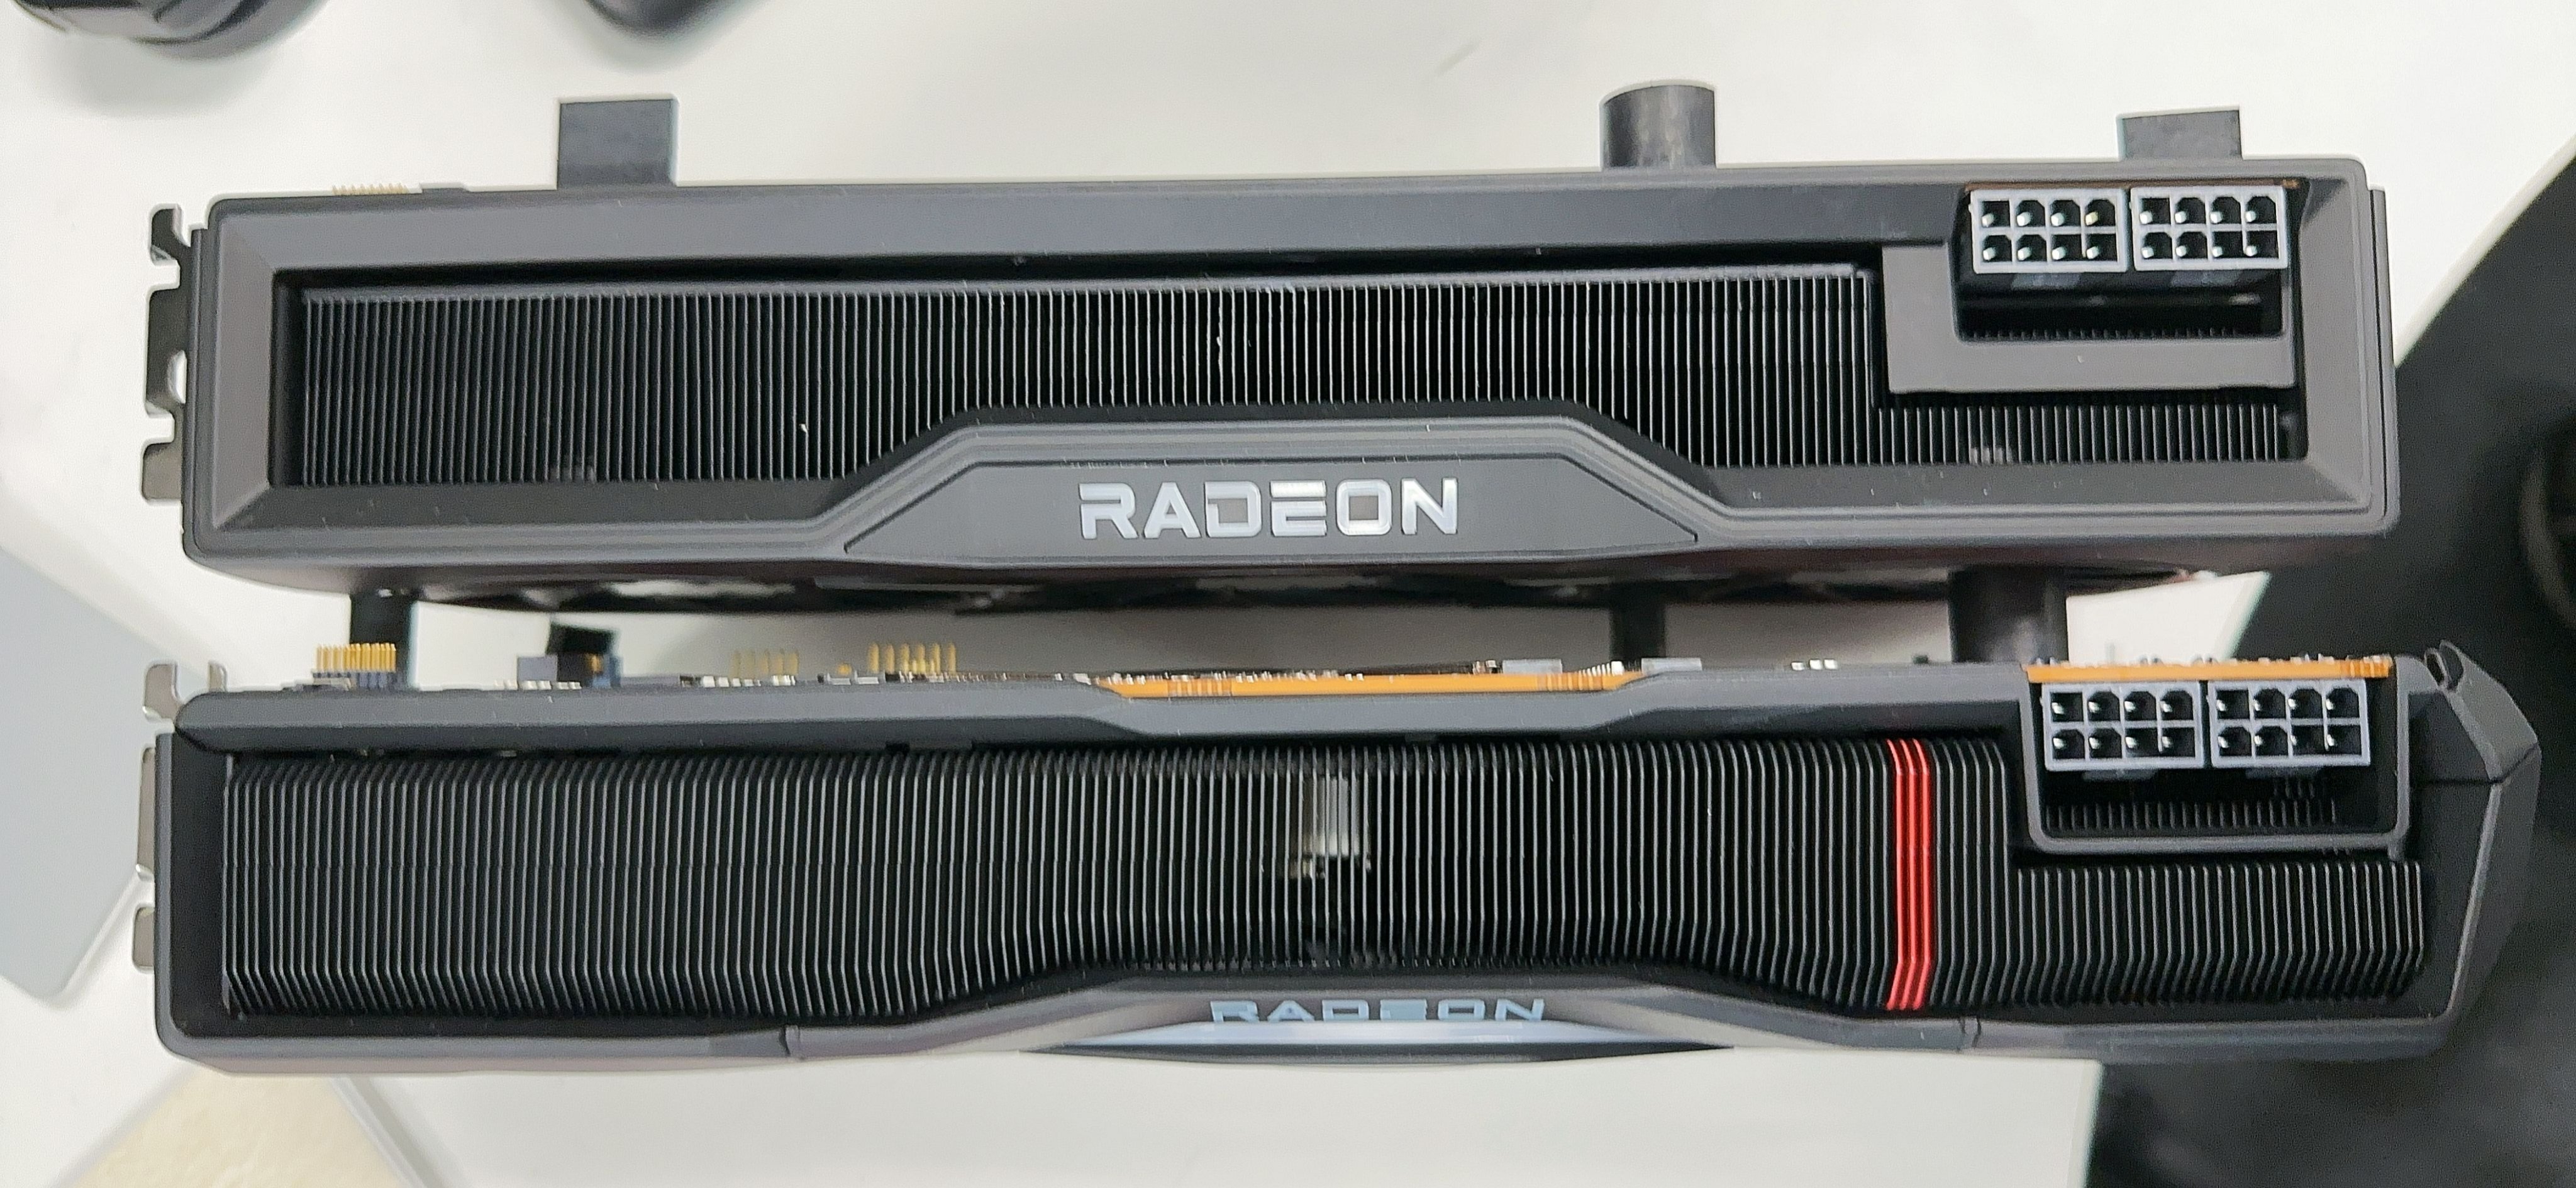 Immagine pubblicata in relazione al seguente contenuto: On line le foto di una video card AMD Radeon RX 7000 in versione reference | Nome immagine: news33815_AMD-Radeon-RX-7000_2.jpg